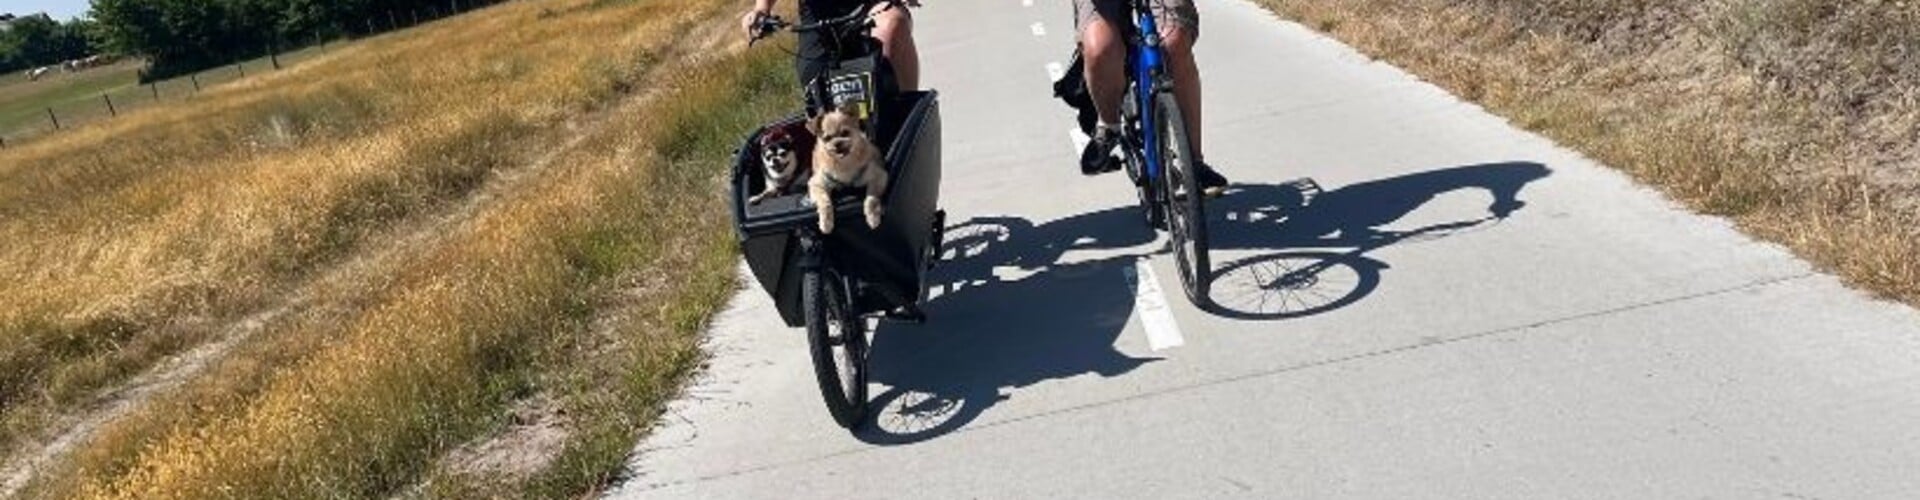 Je hond meenemen op de fiets